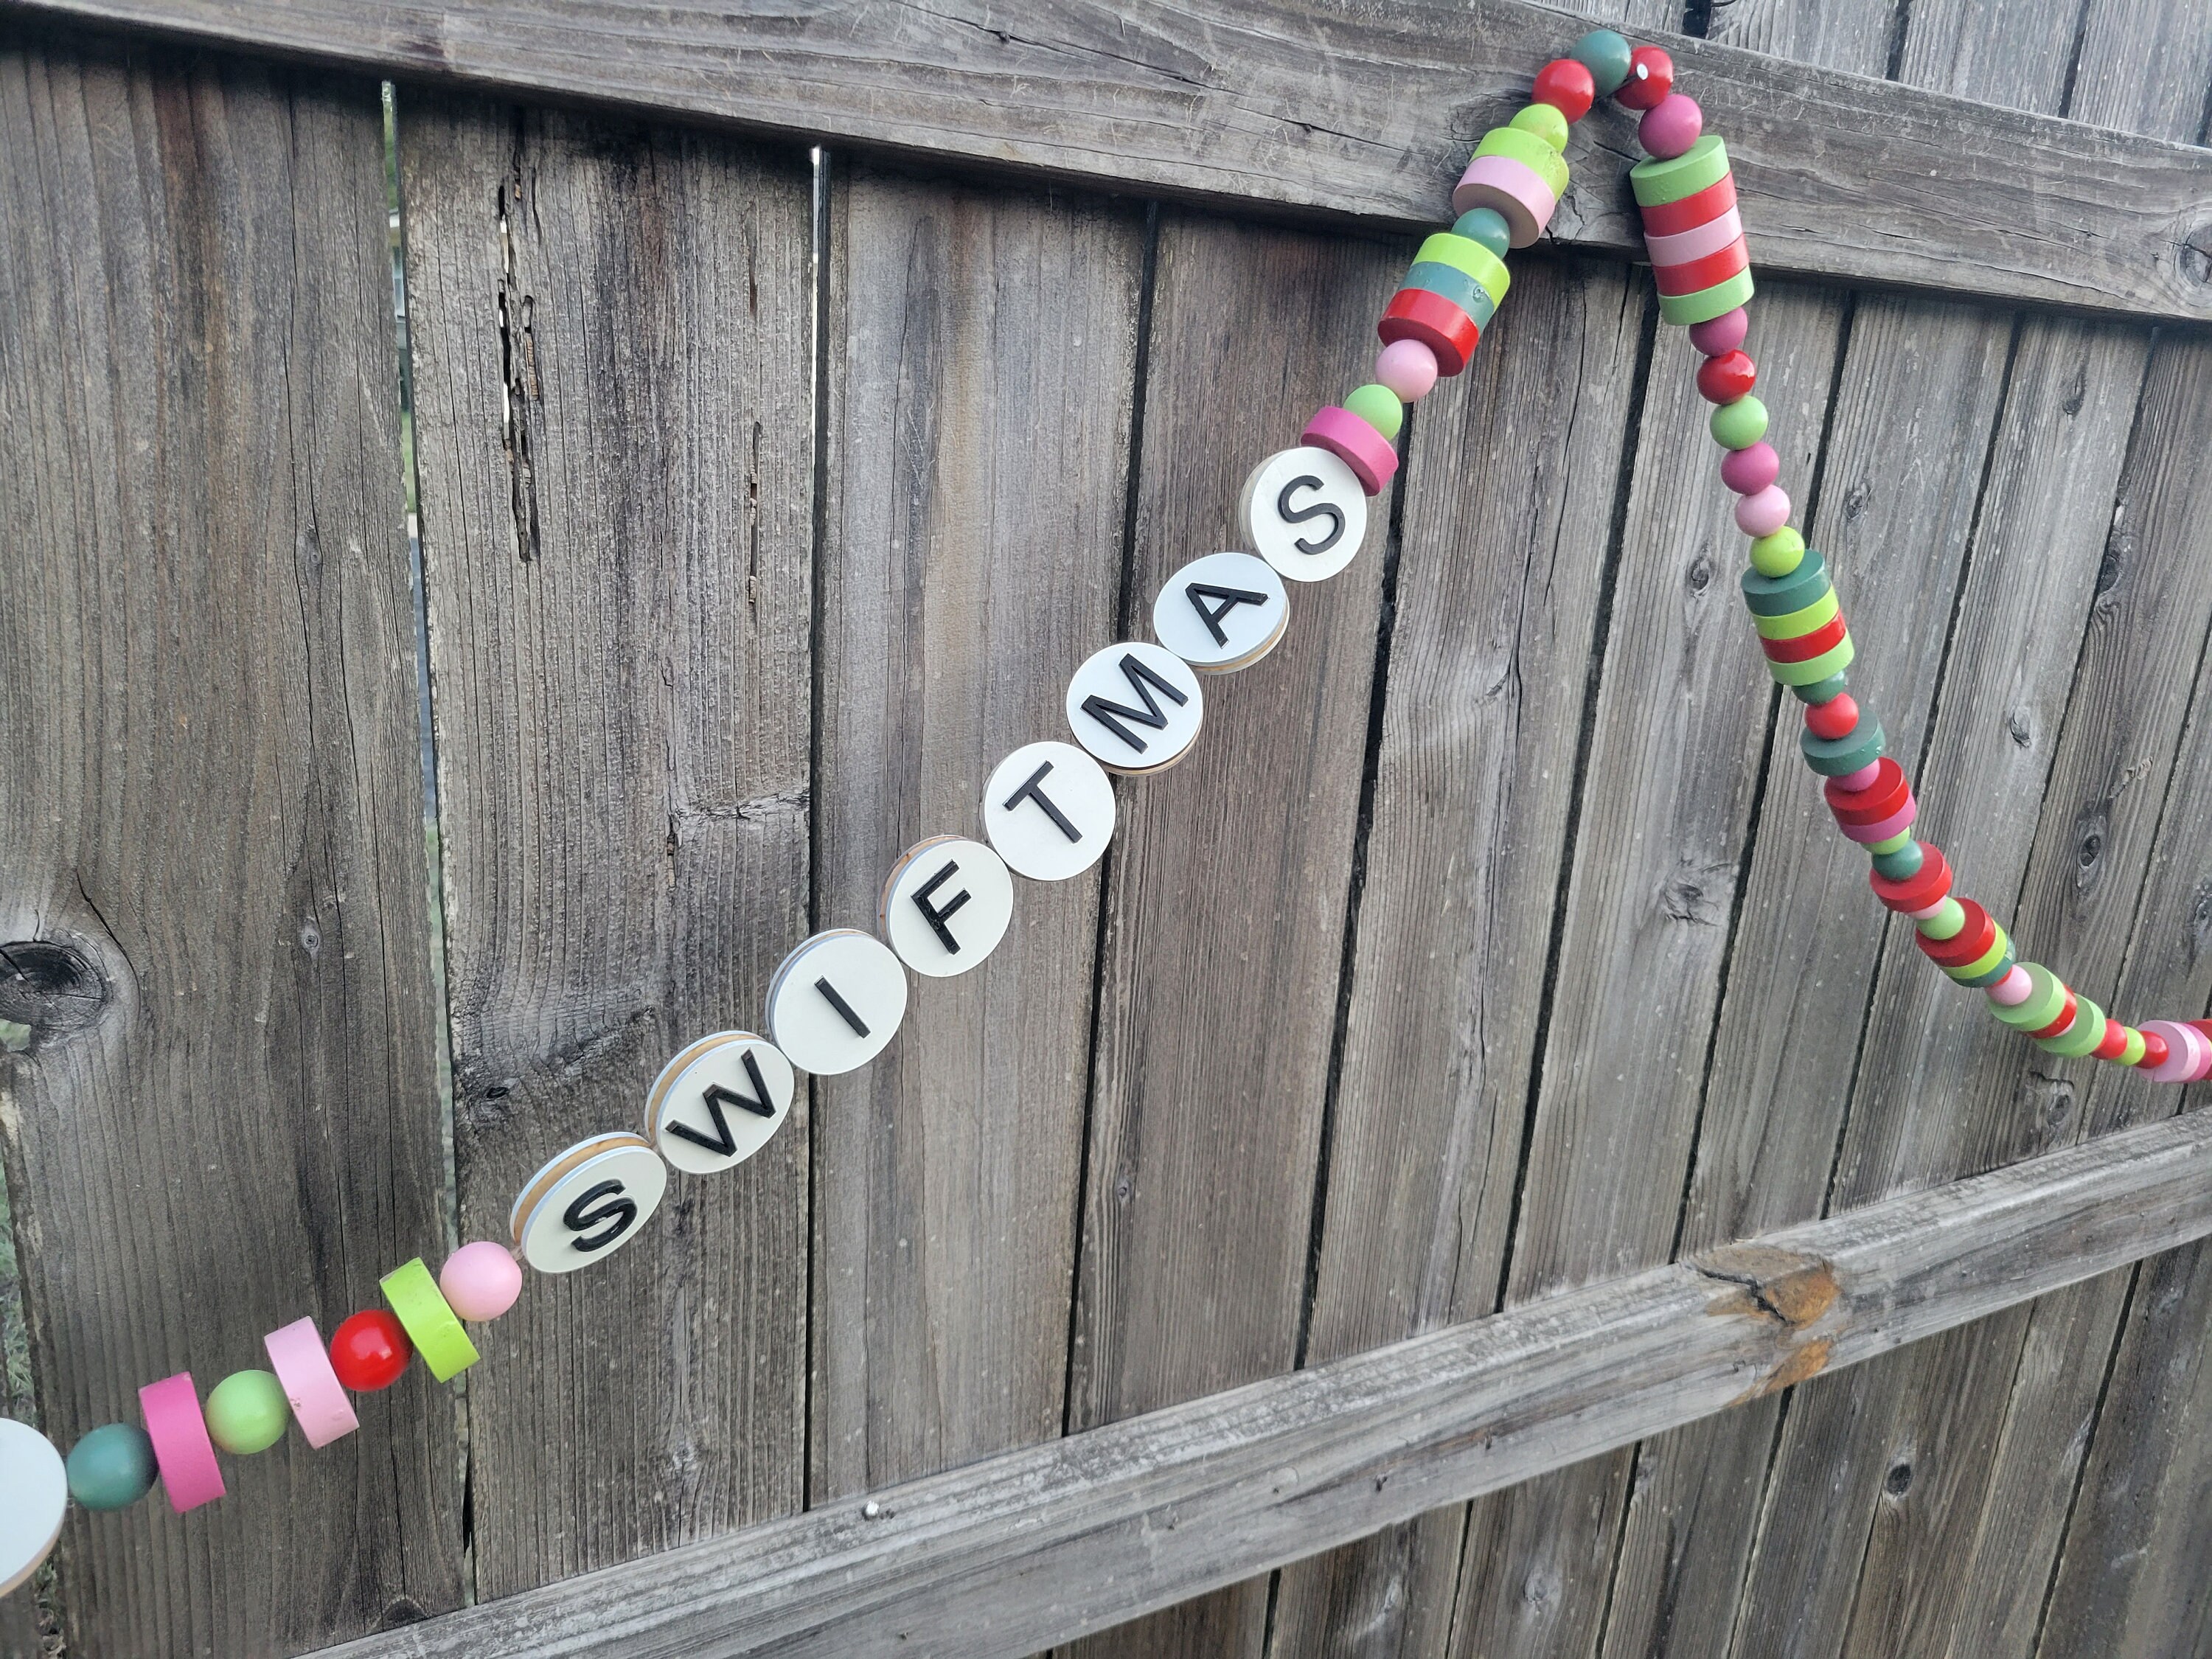 Beaded Friendship Bracelets For Kids To Make —